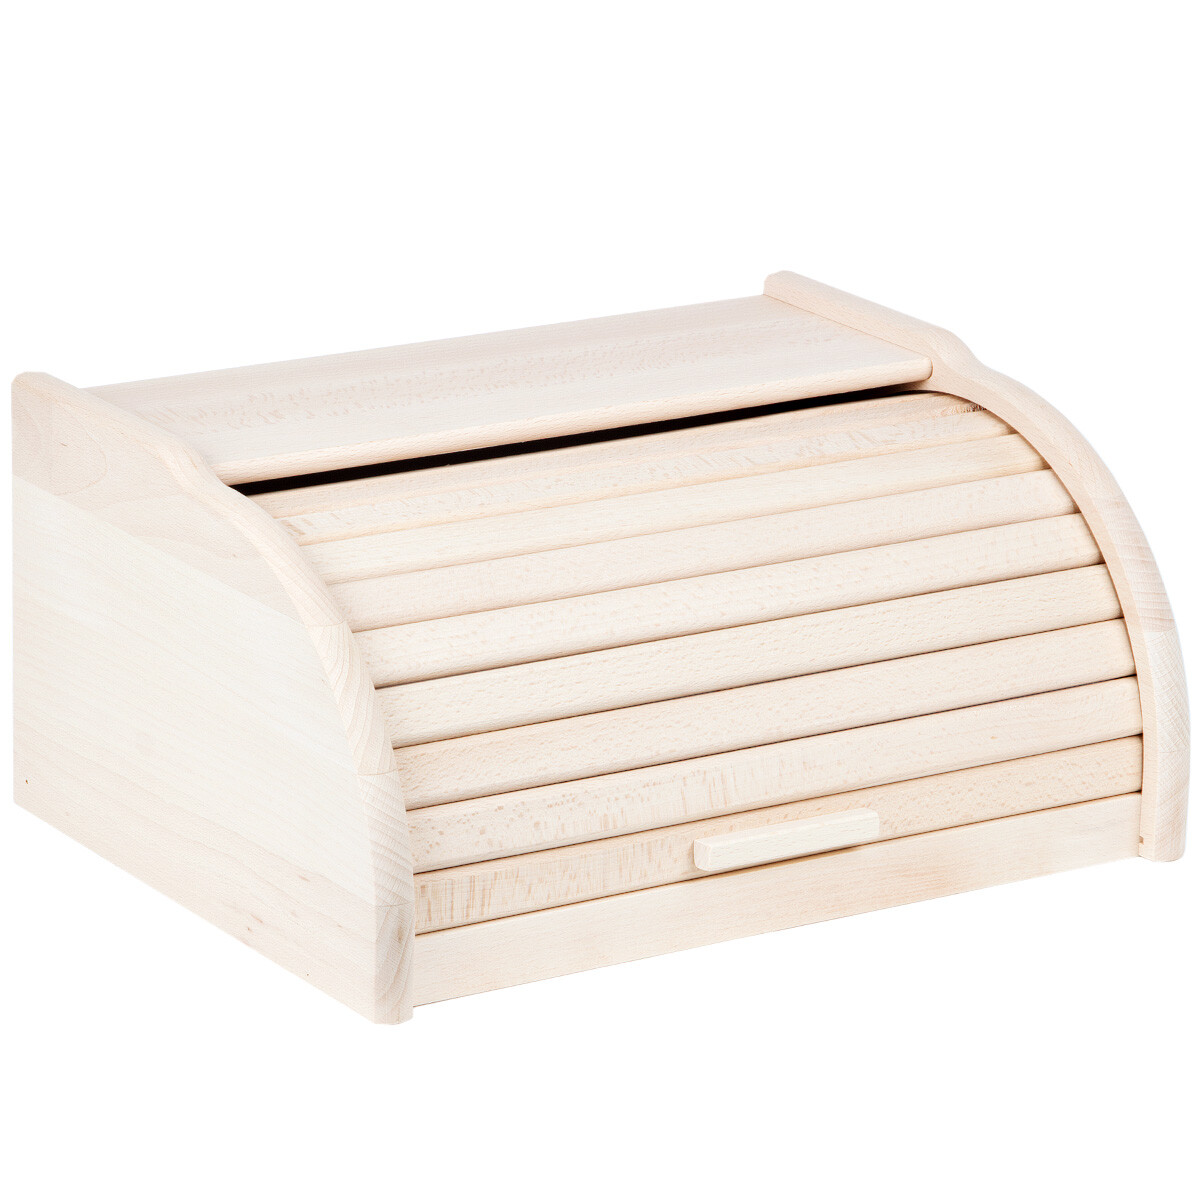 Holz Brot Box Apollo Roll Top Mülleimer Aufbewahrung Brot Küche klein-weiß